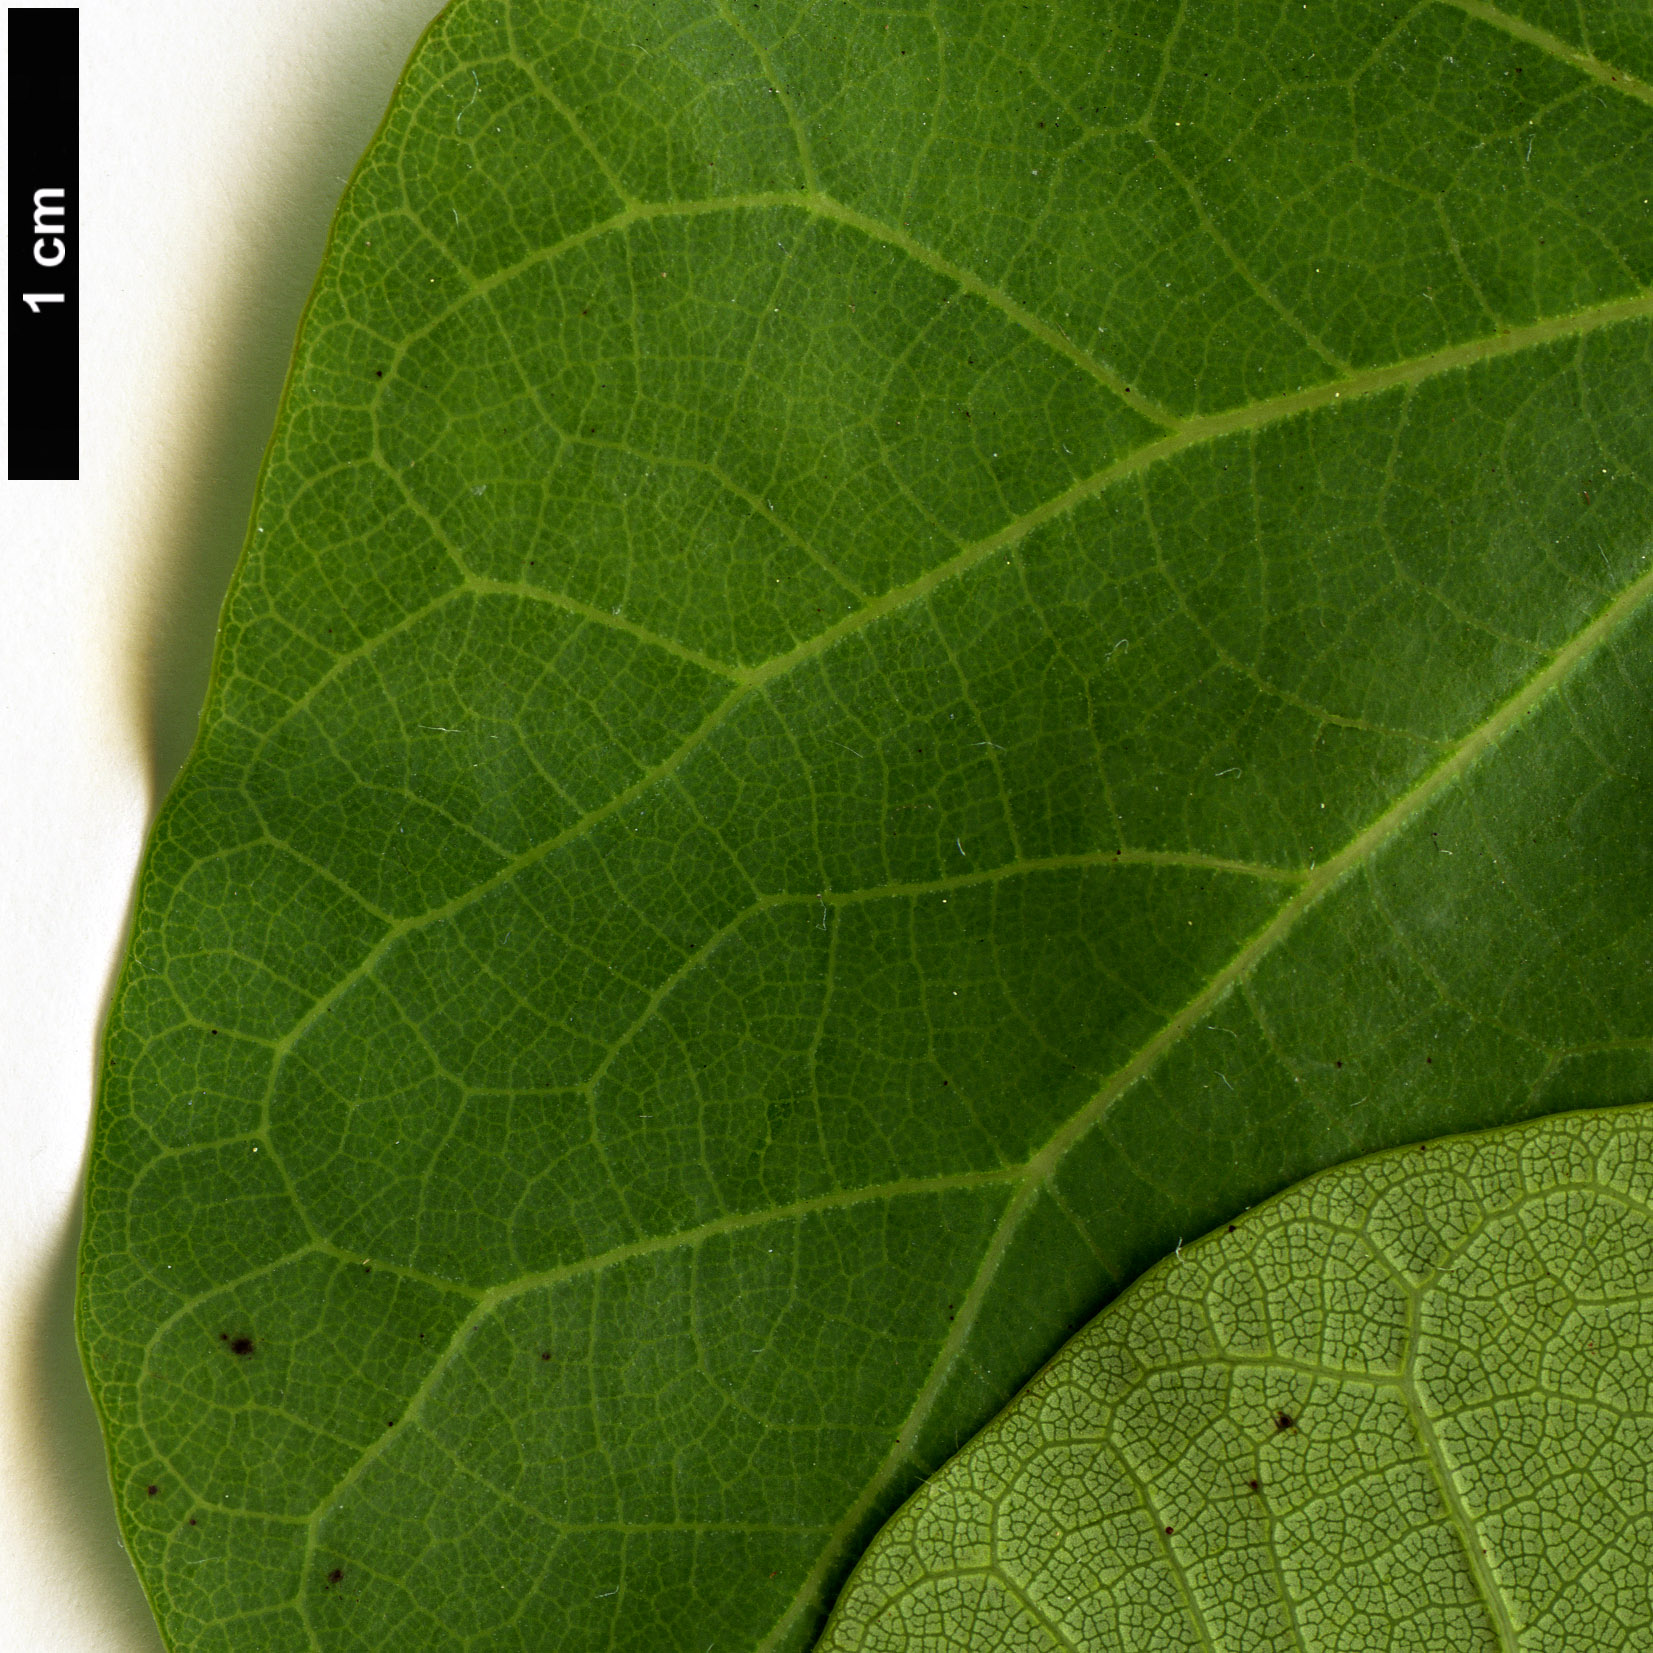 High resolution image: Family: Fabaceae - Genus: Cercis - Taxon: siliquastrum